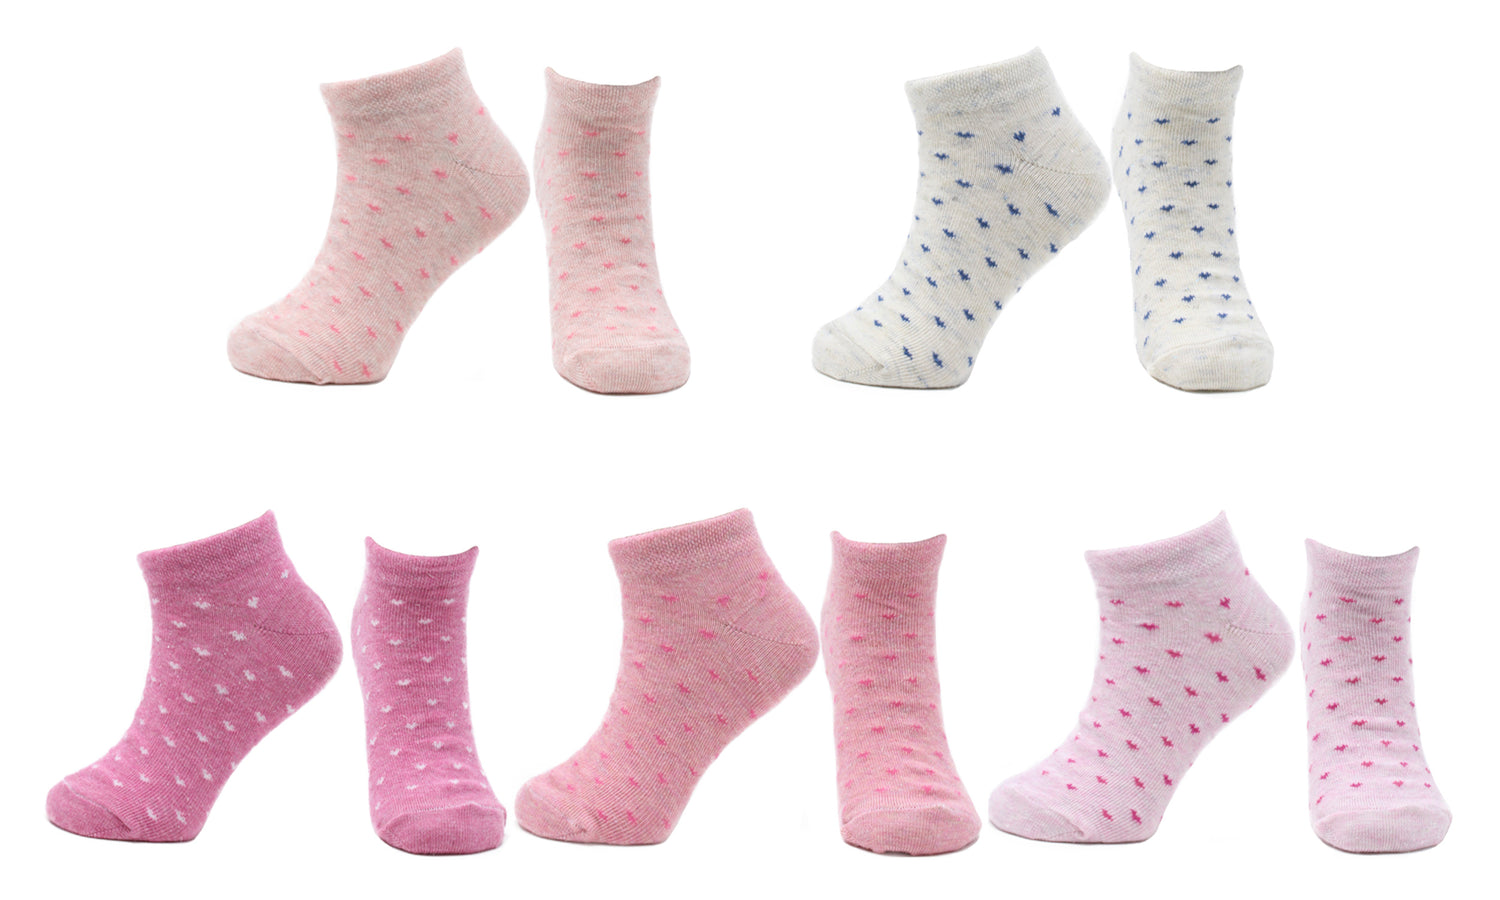 Socquettes Fille Coeurs en Coton Peigné (5 paires) – Kolibri Socks